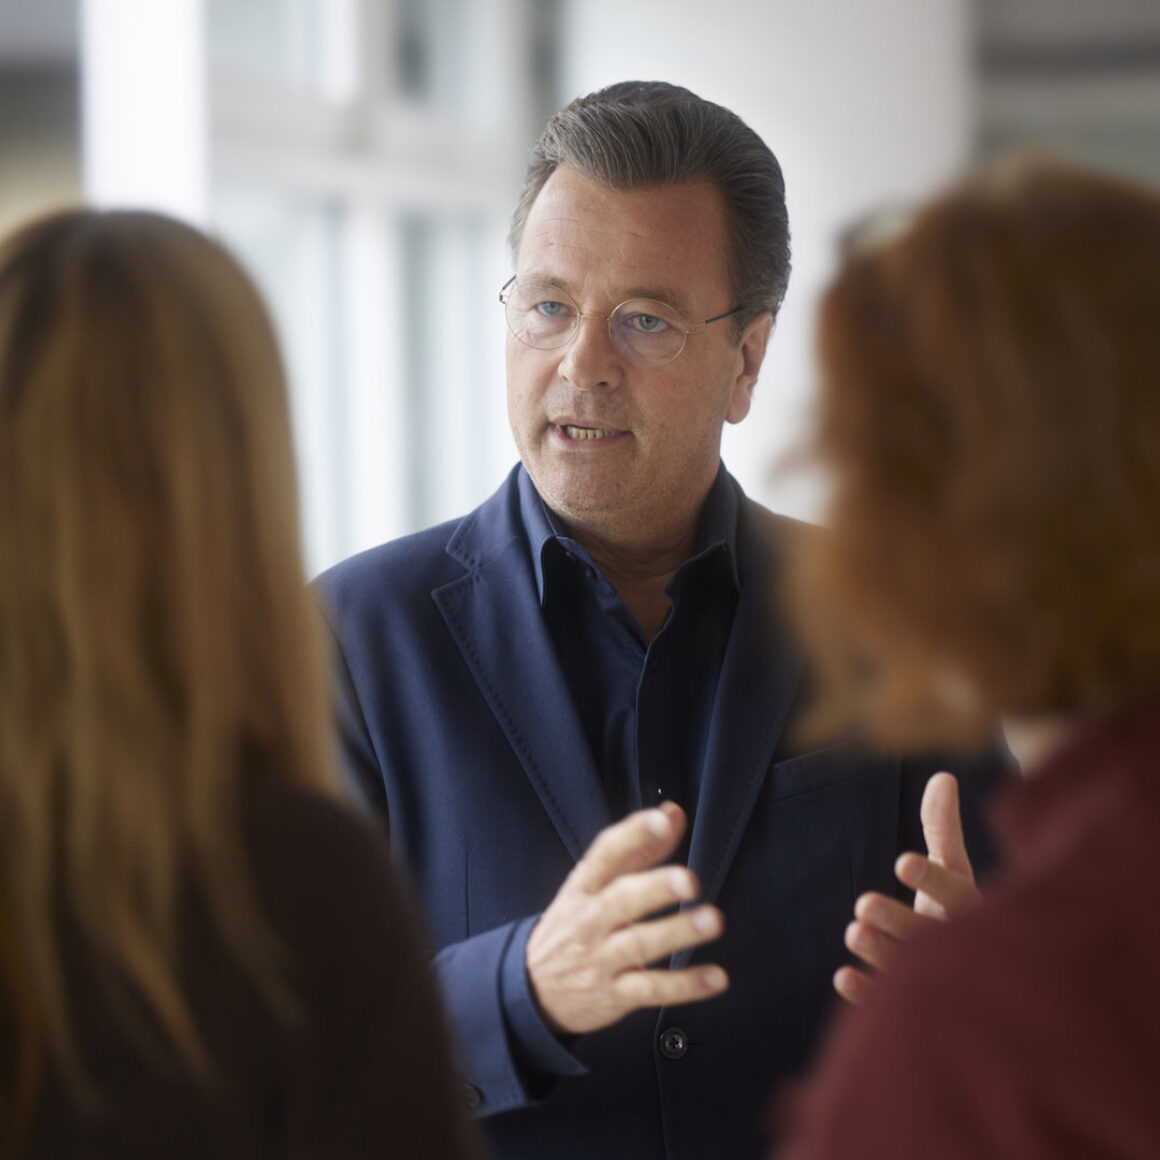 Mittelstandschef Markus Jerger im angeregten Gespräch mit zwei Personen